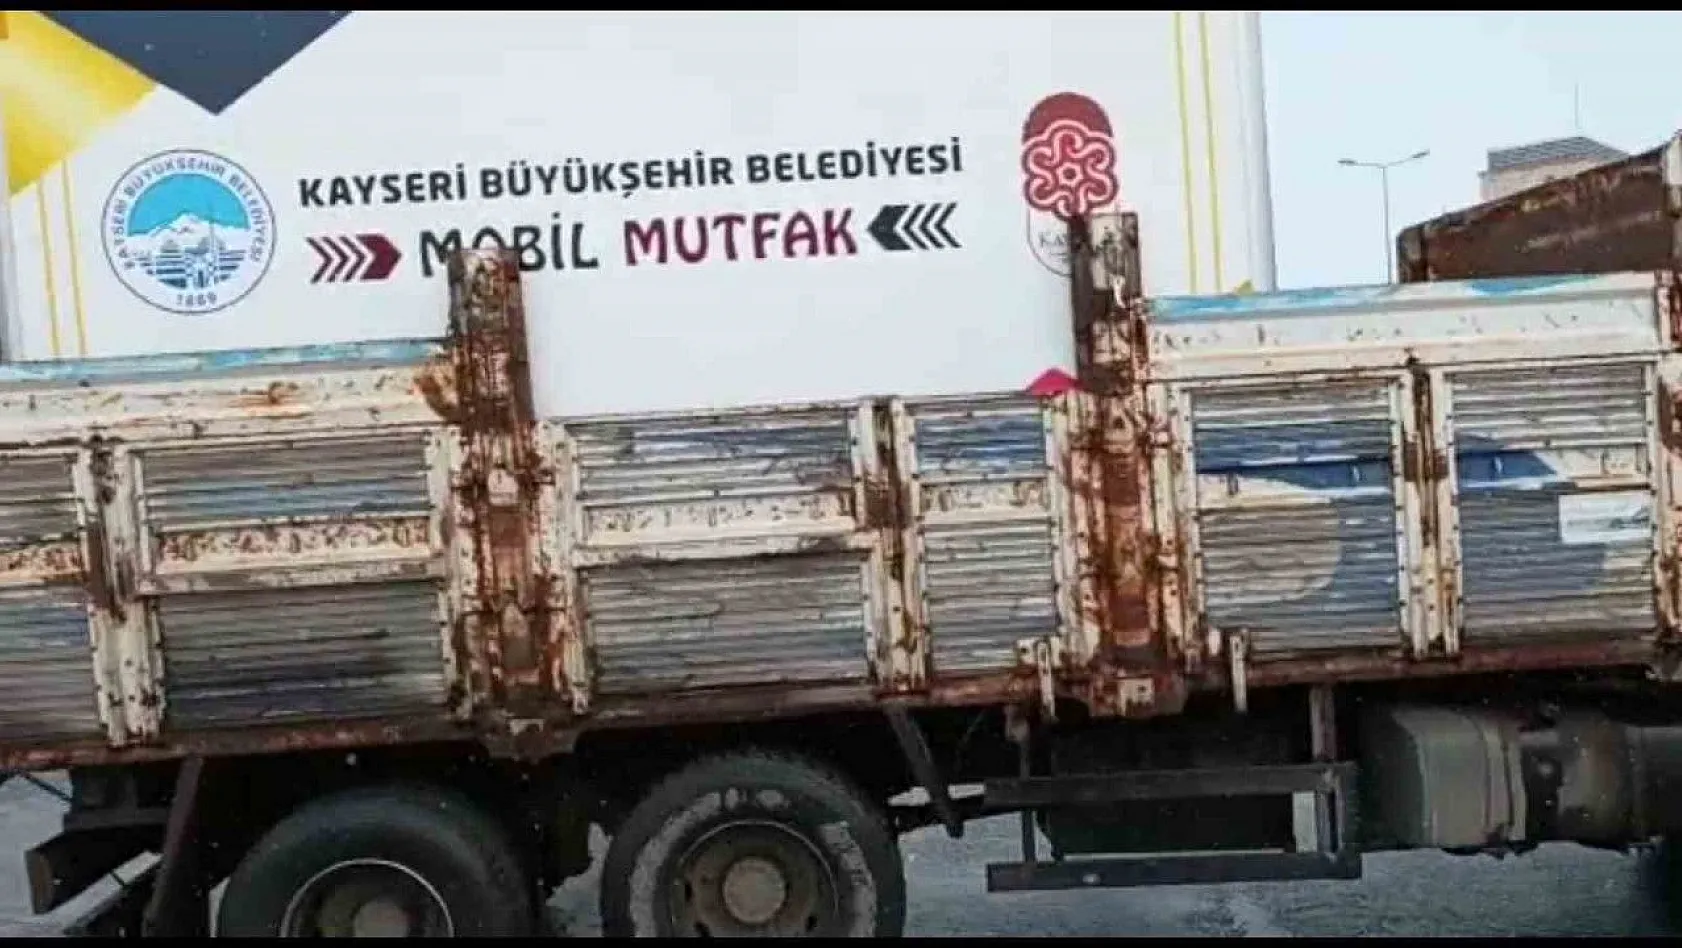 Büyükkılıç: Kahramanmaraş'a 10 araç, 20 personel ile mobil mutfak gönderdik